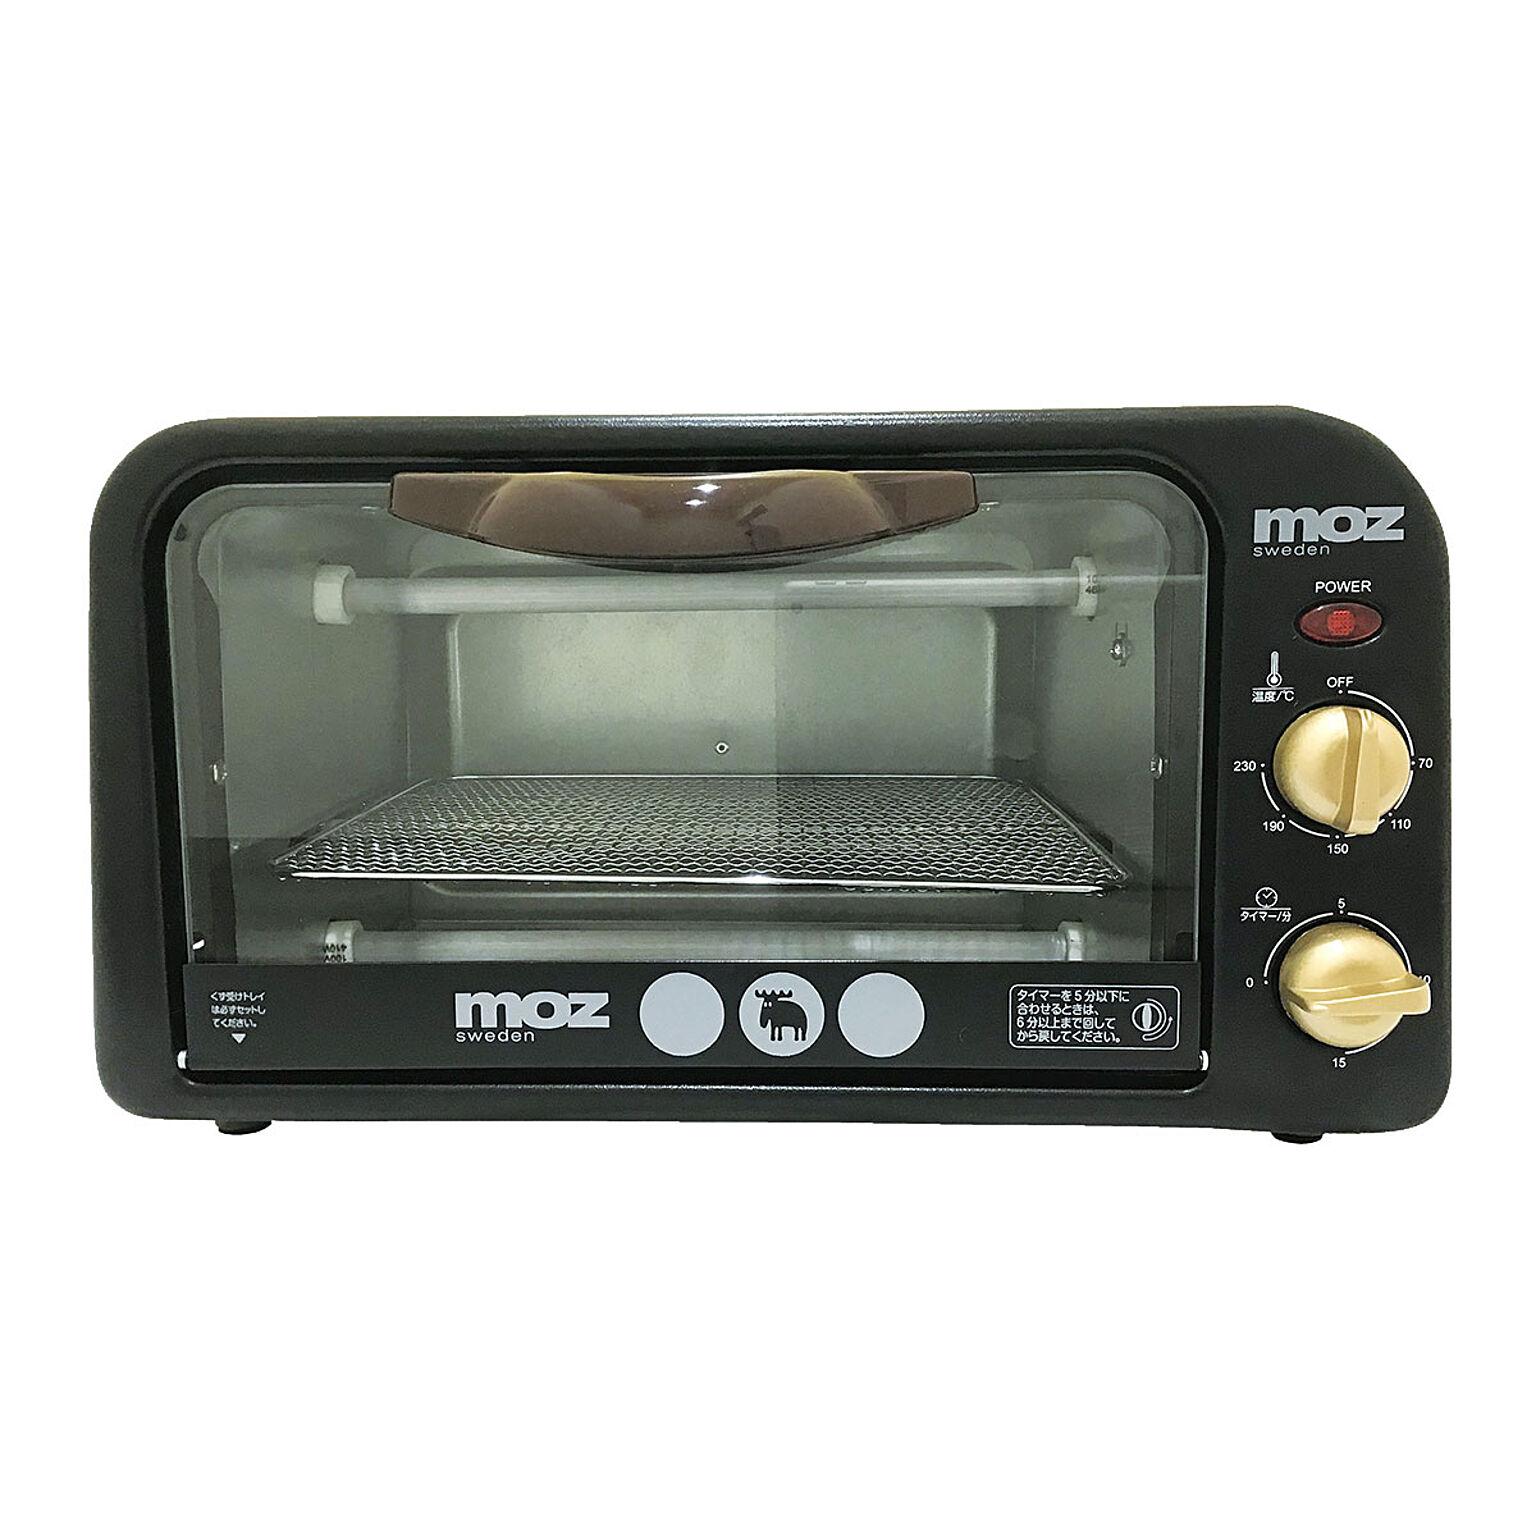 モズ オーブントースター 2枚 EF-LC31 moz トースター 食パン おいしい おしゃれ 一人暮らし キッチン家電 1年保証